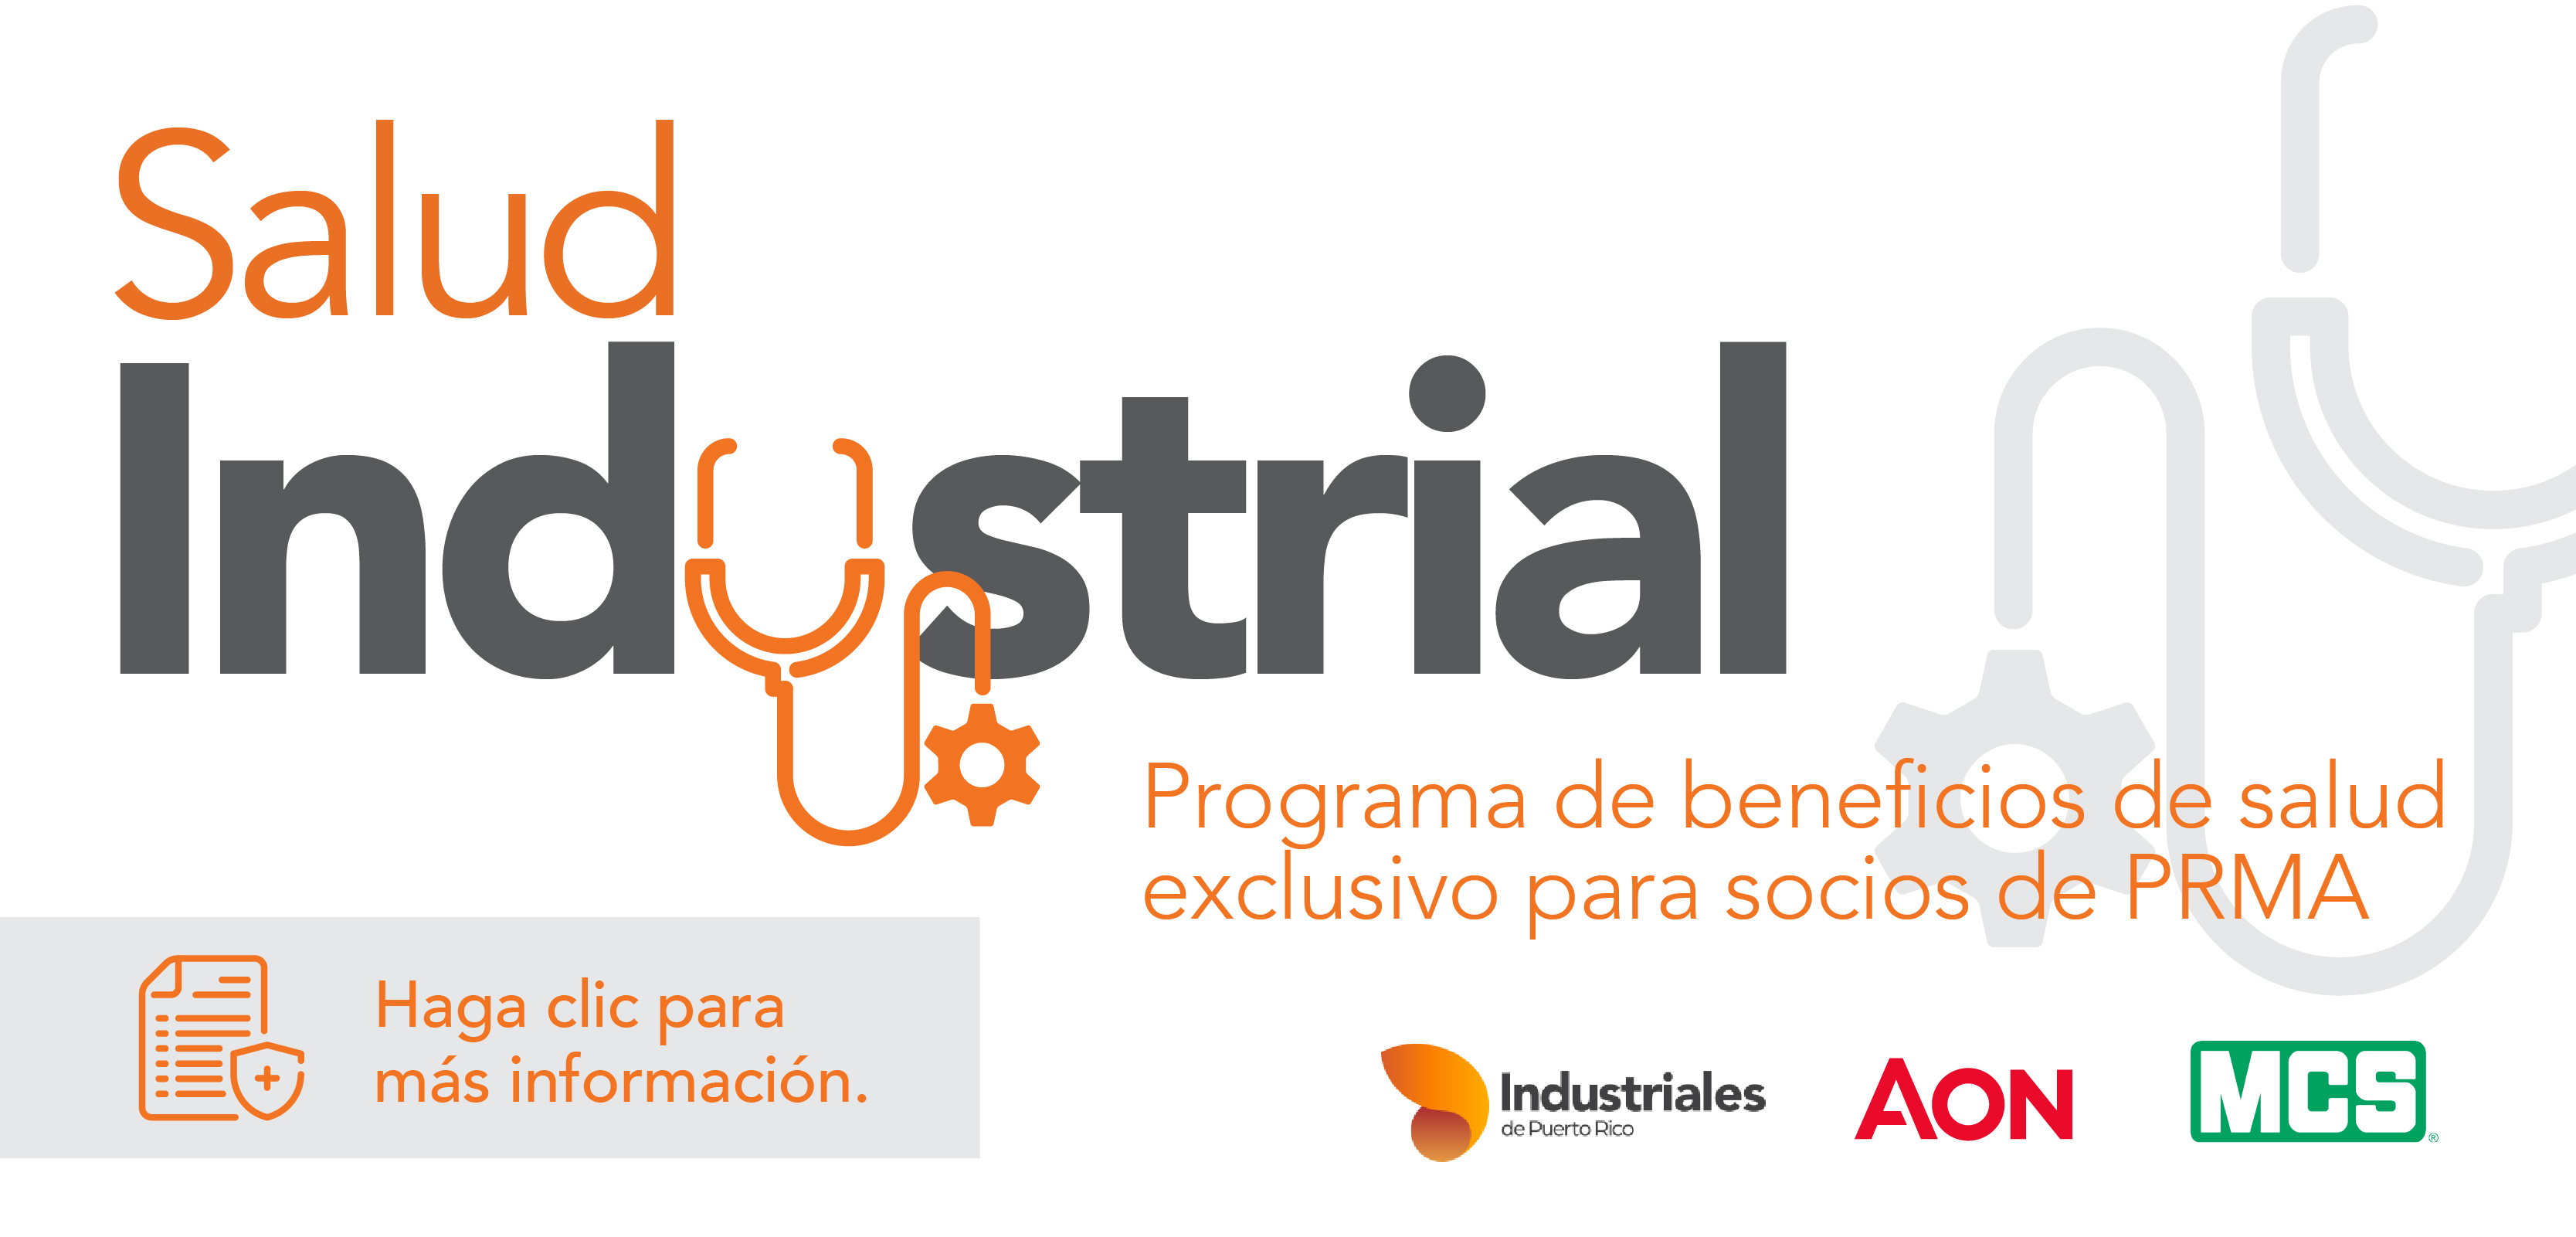 Salud Industrial